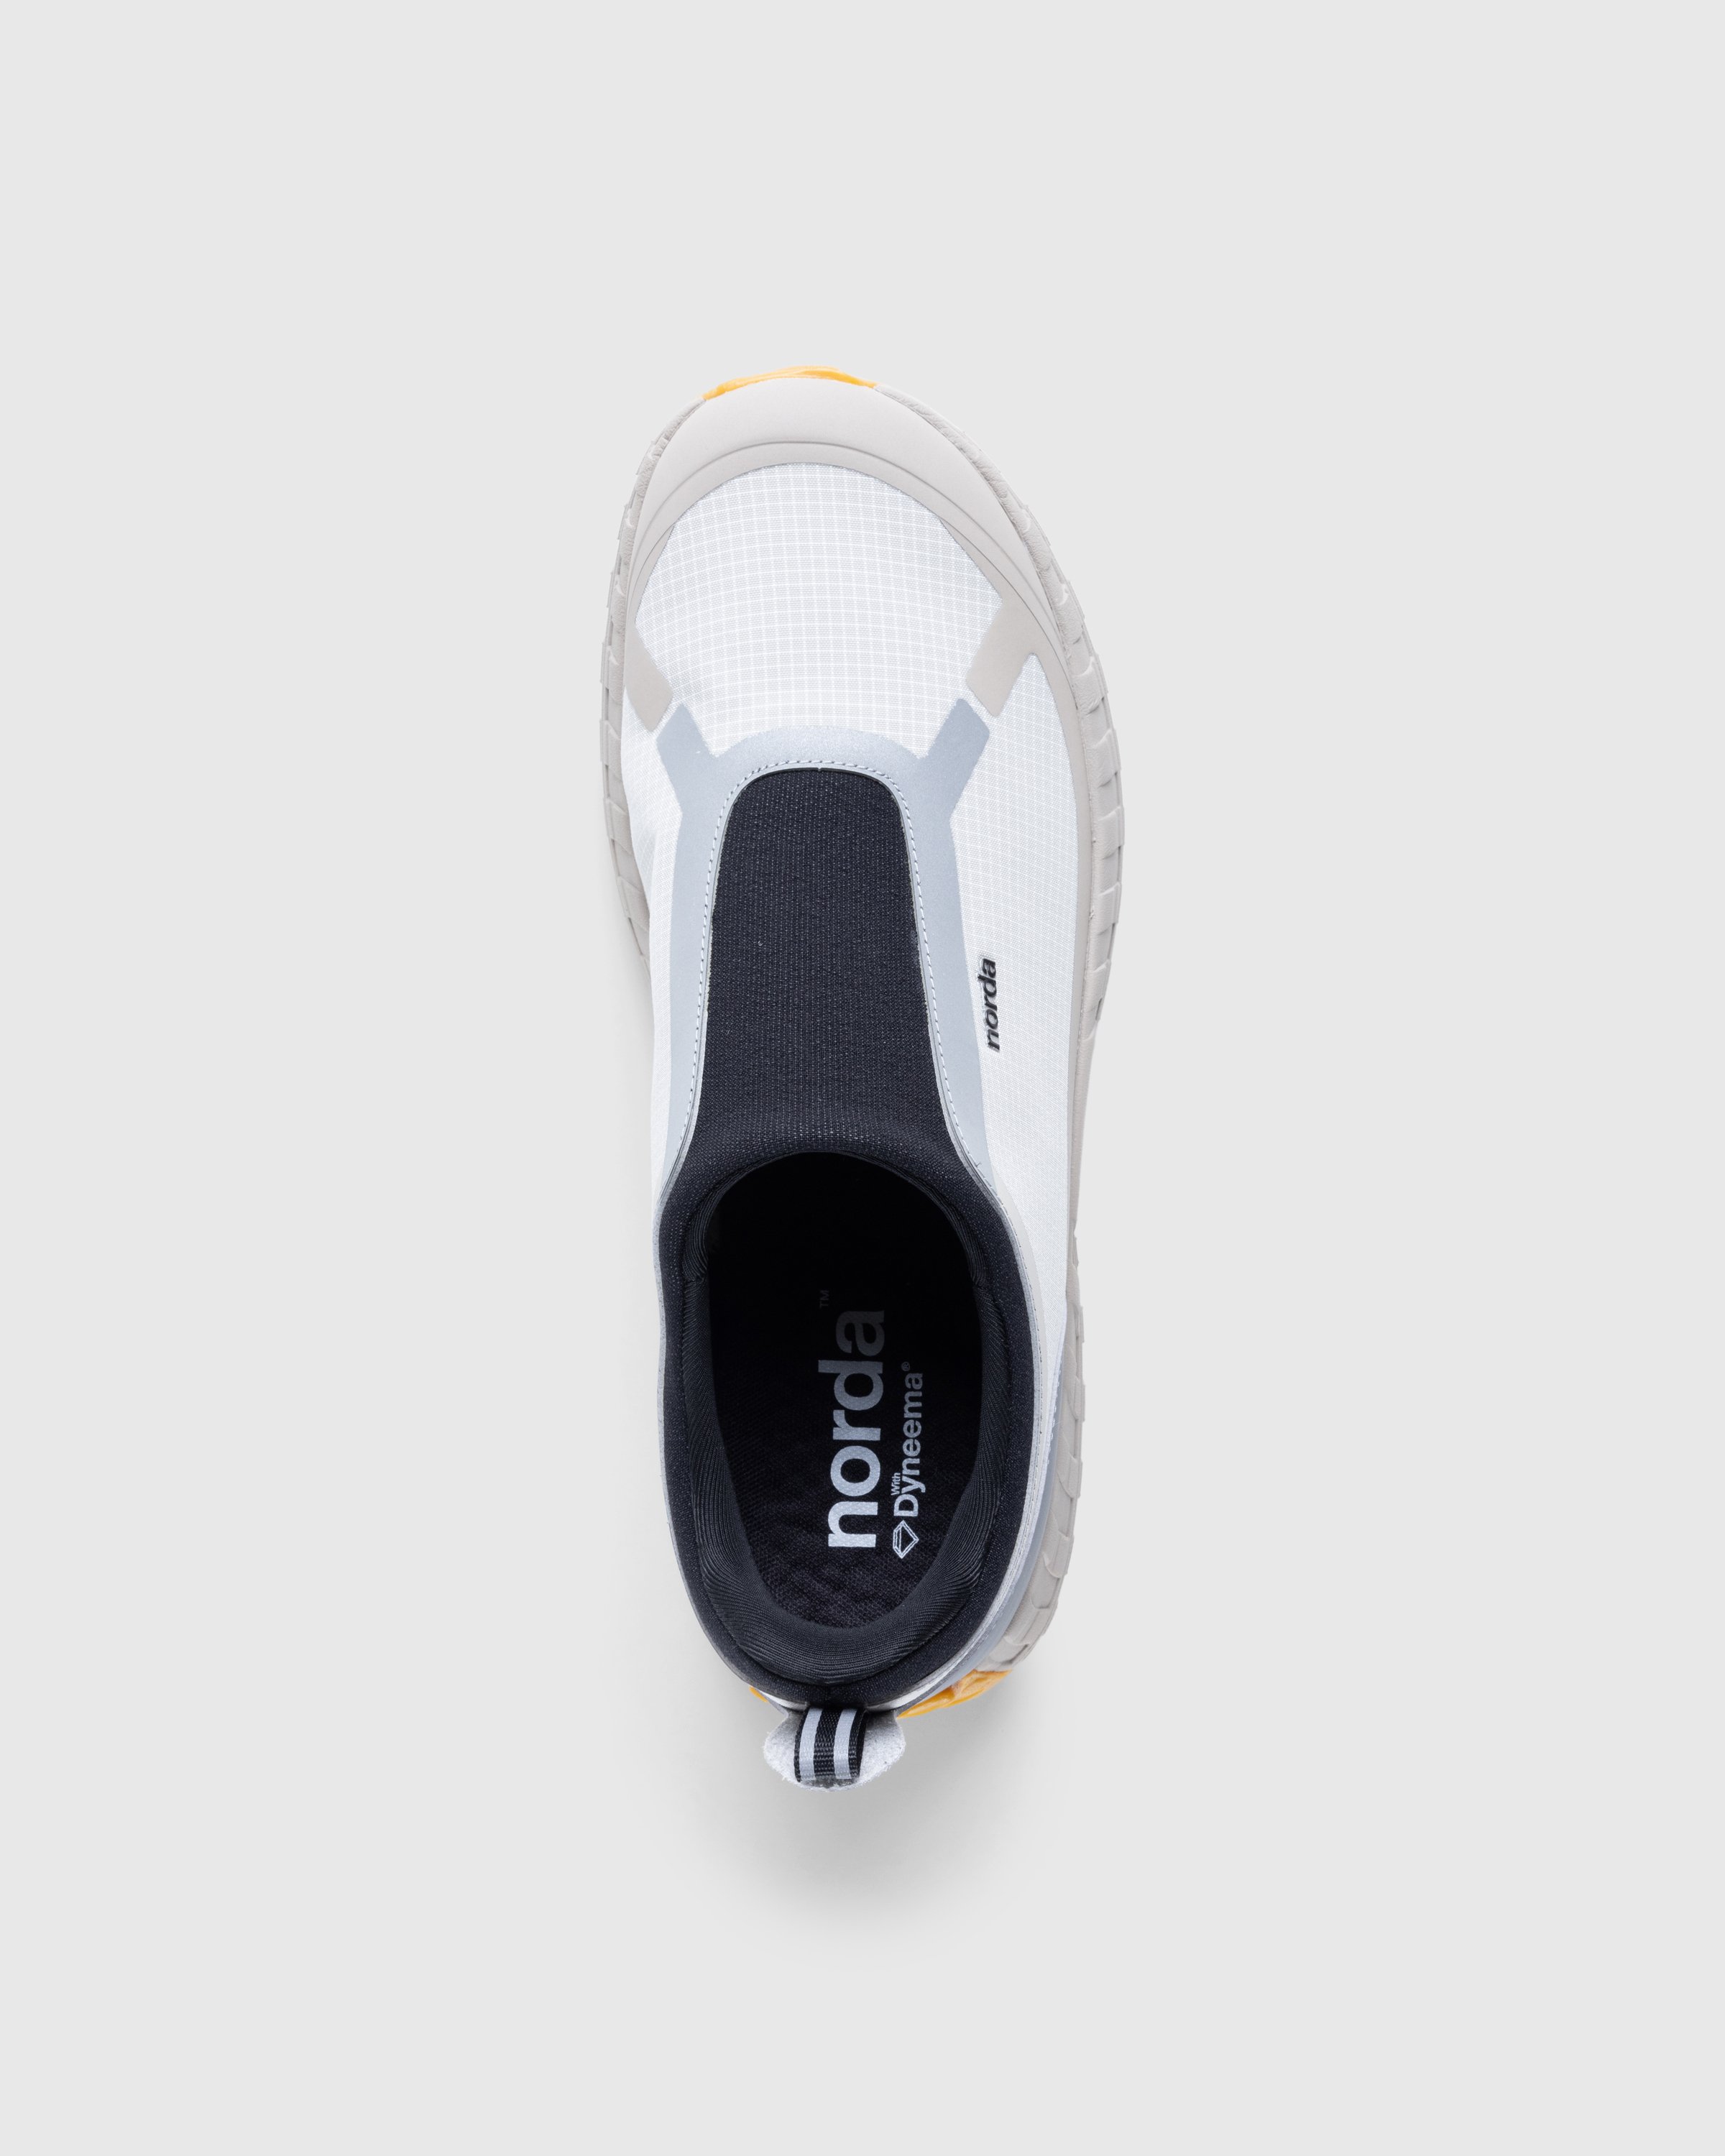 Norda - NORDA003-M - Footwear - Grey - Image 5